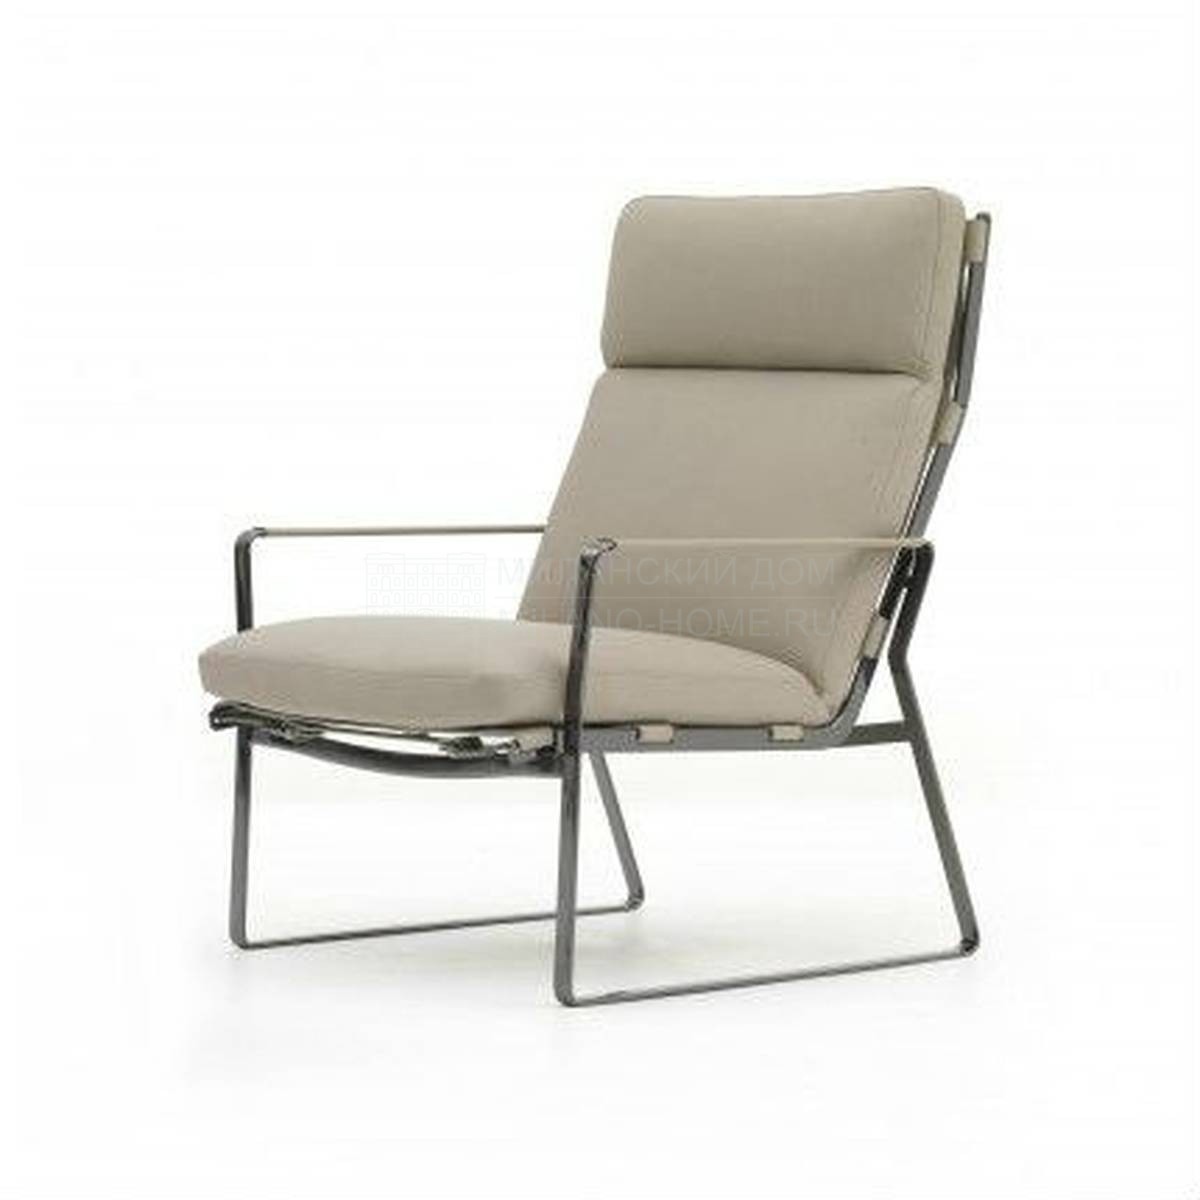 Рабочее кресло Blixen armchair из Италии фабрики FENDI Casa